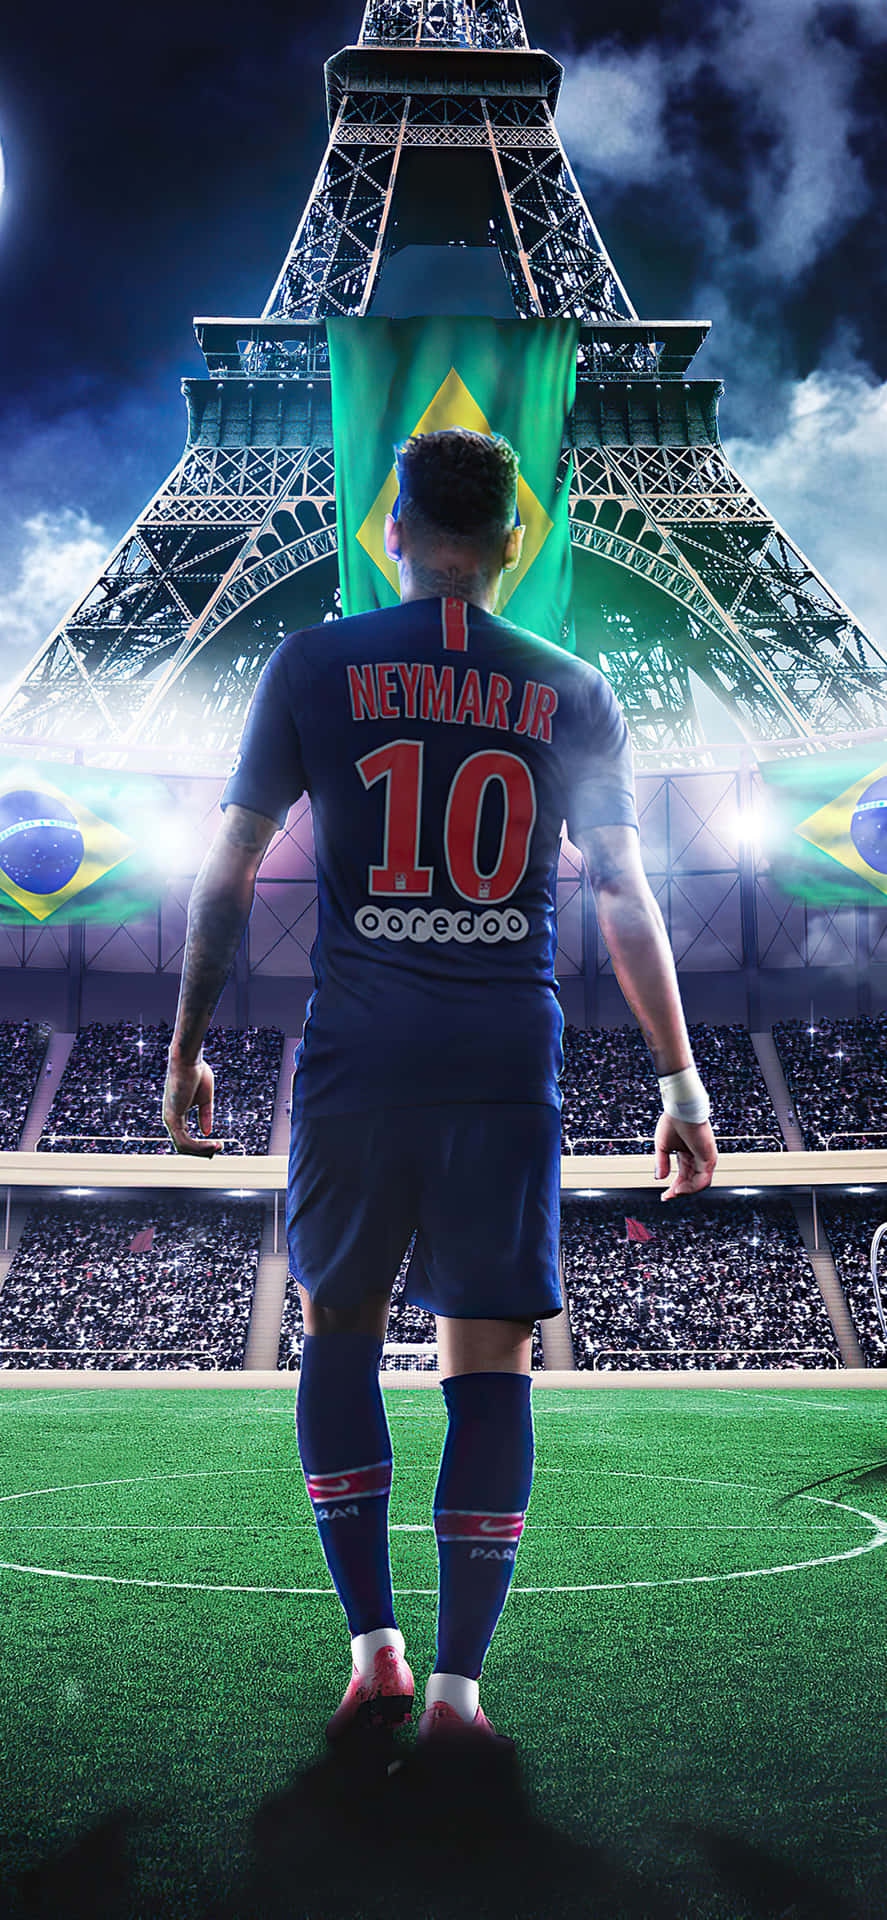 47+] Neymar PSG 2023 Wallpapers - WallpaperSafari